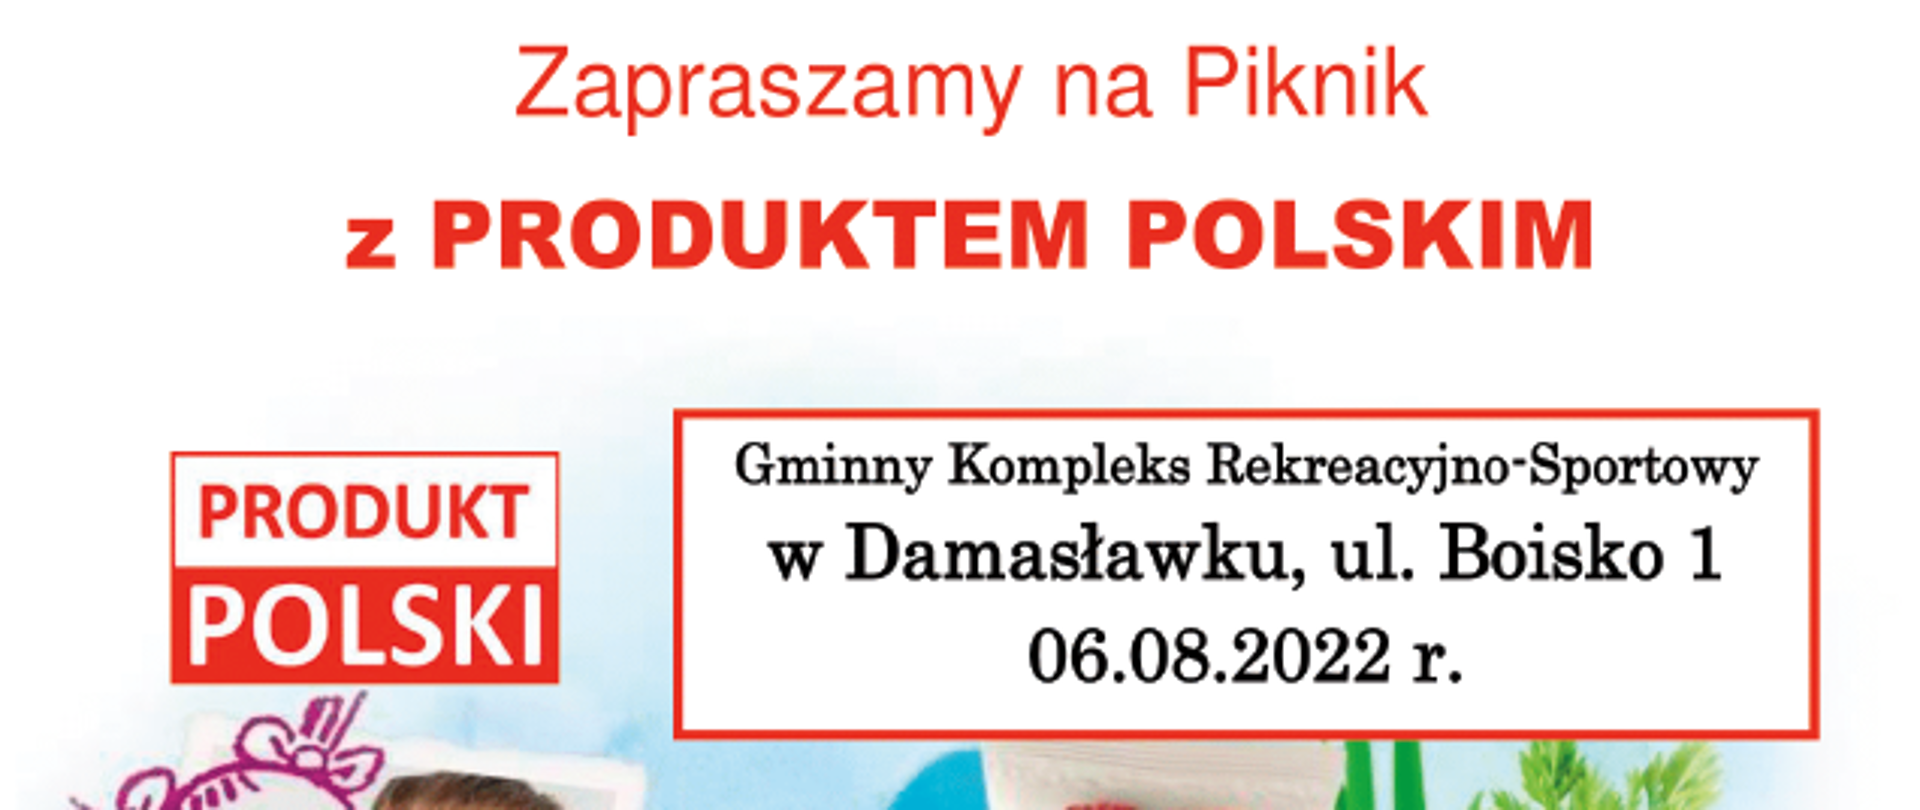 Plakat informacyjny pt. Zapraszamy na Piknik z Produktem Polskim. Szczegółowe informacje o treści plakatu pod adresem e-mail: kinga.konicka@kowr.gov.pl